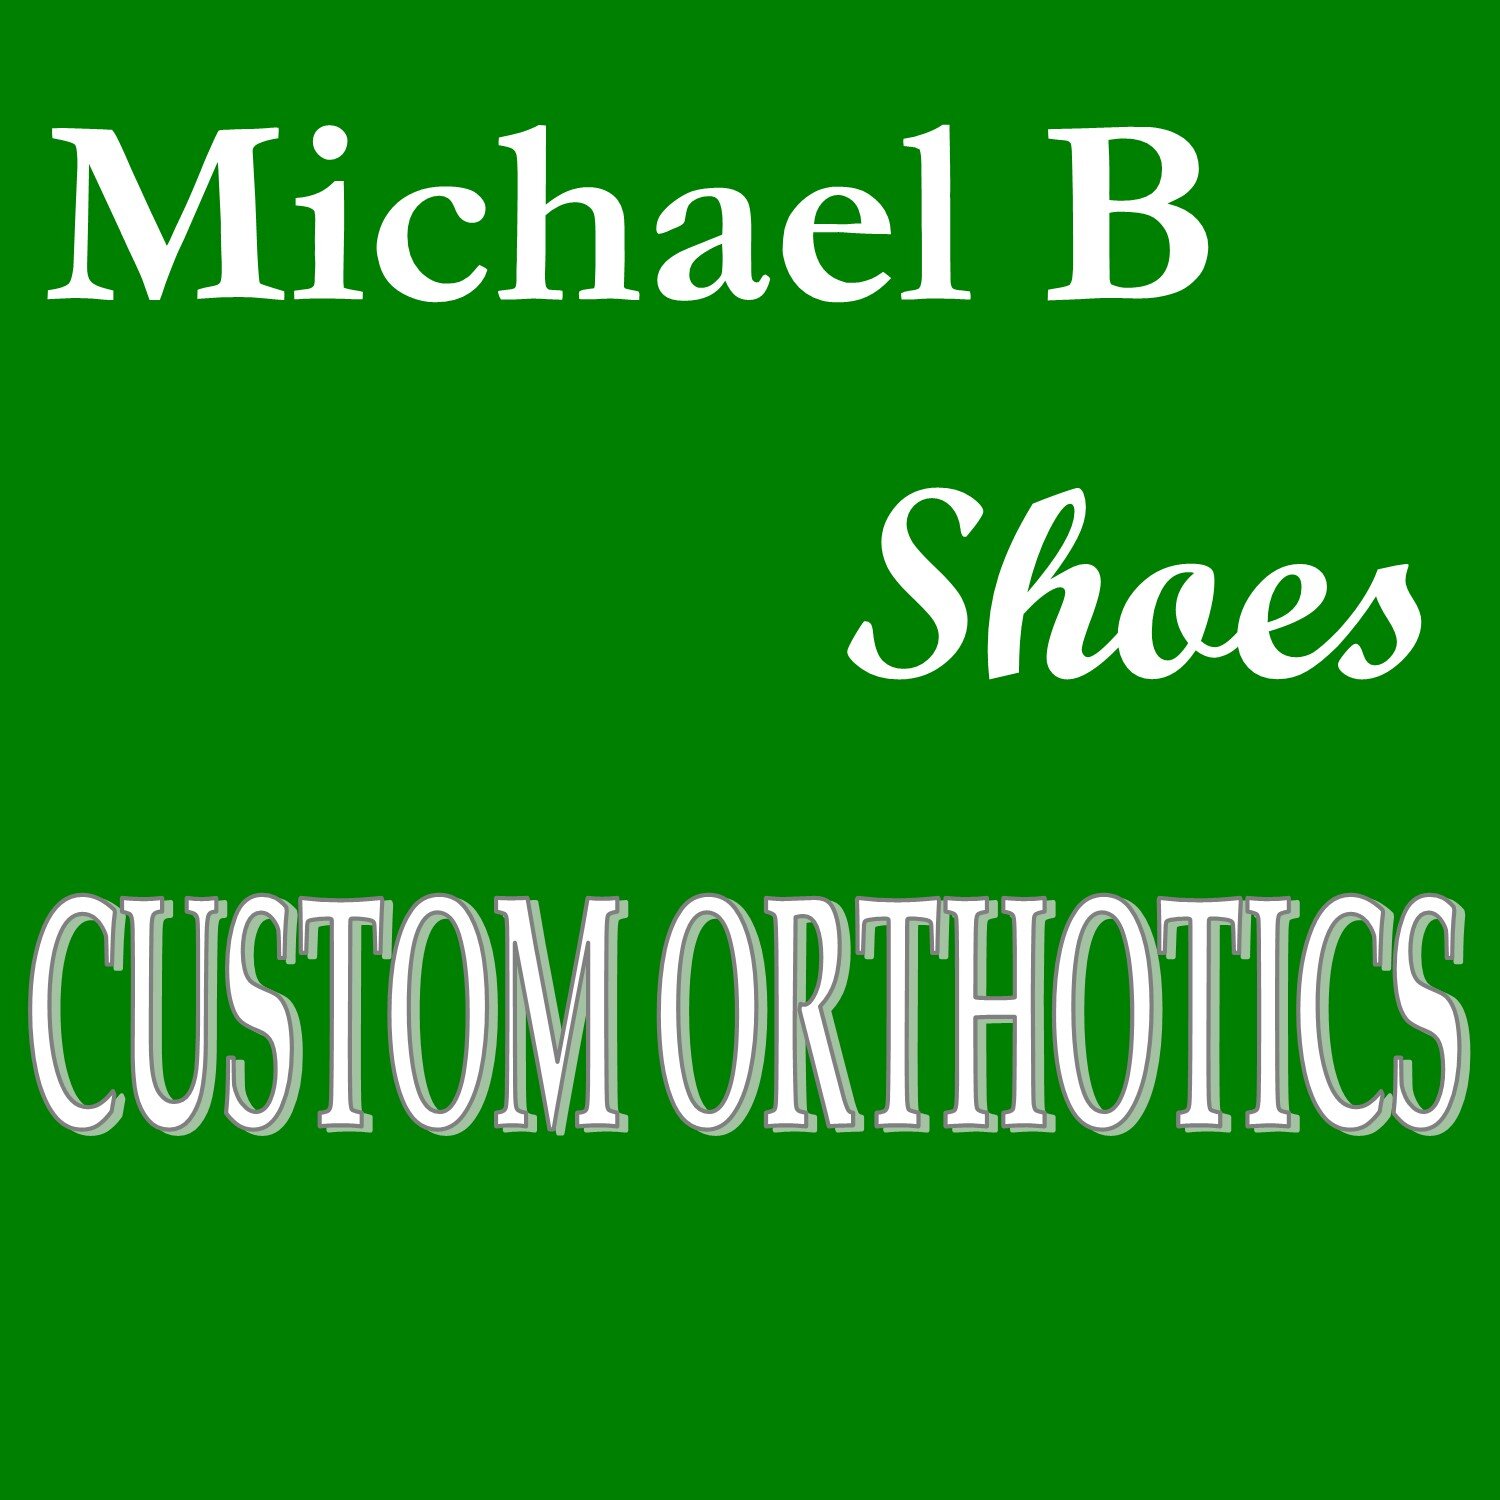 Custom Orhtotics Logo.jpg